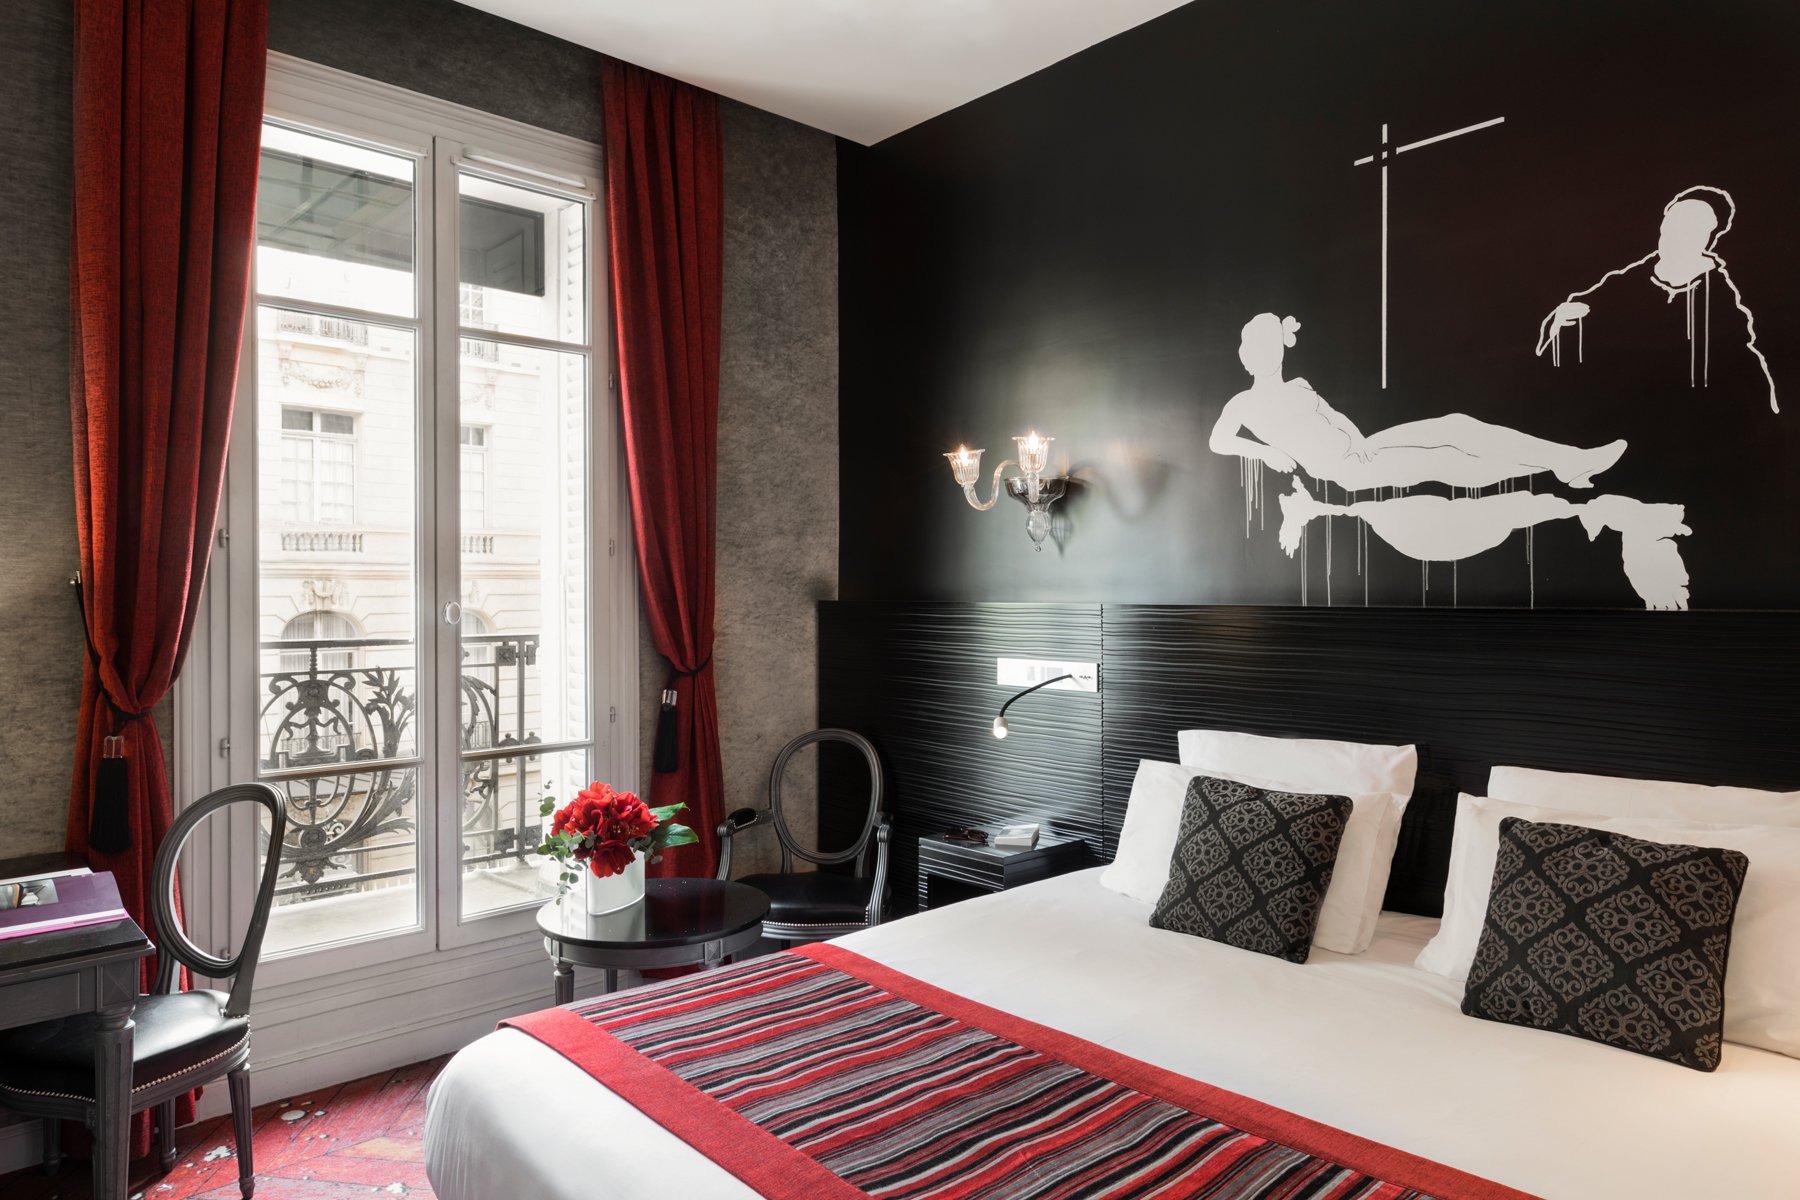 Maison Albar Hotels Le Champs-Elysées superior room